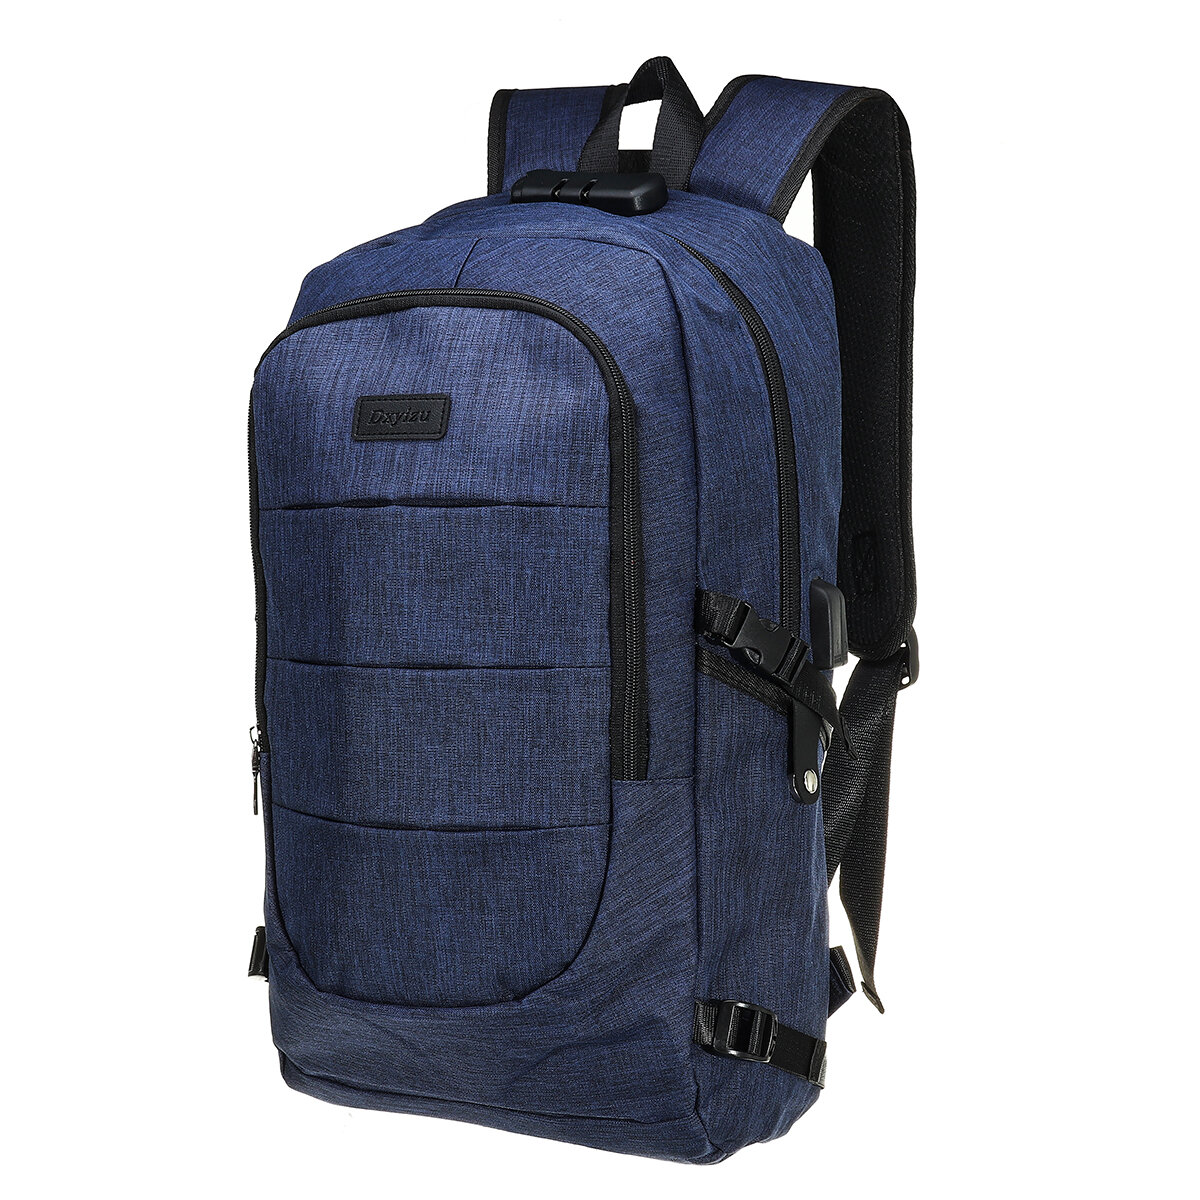 Unisexe anti-vol ordinateur portable sac à dos voyage affaires sac d'école sac à dos avec verrouillage sécurisé + port USB 